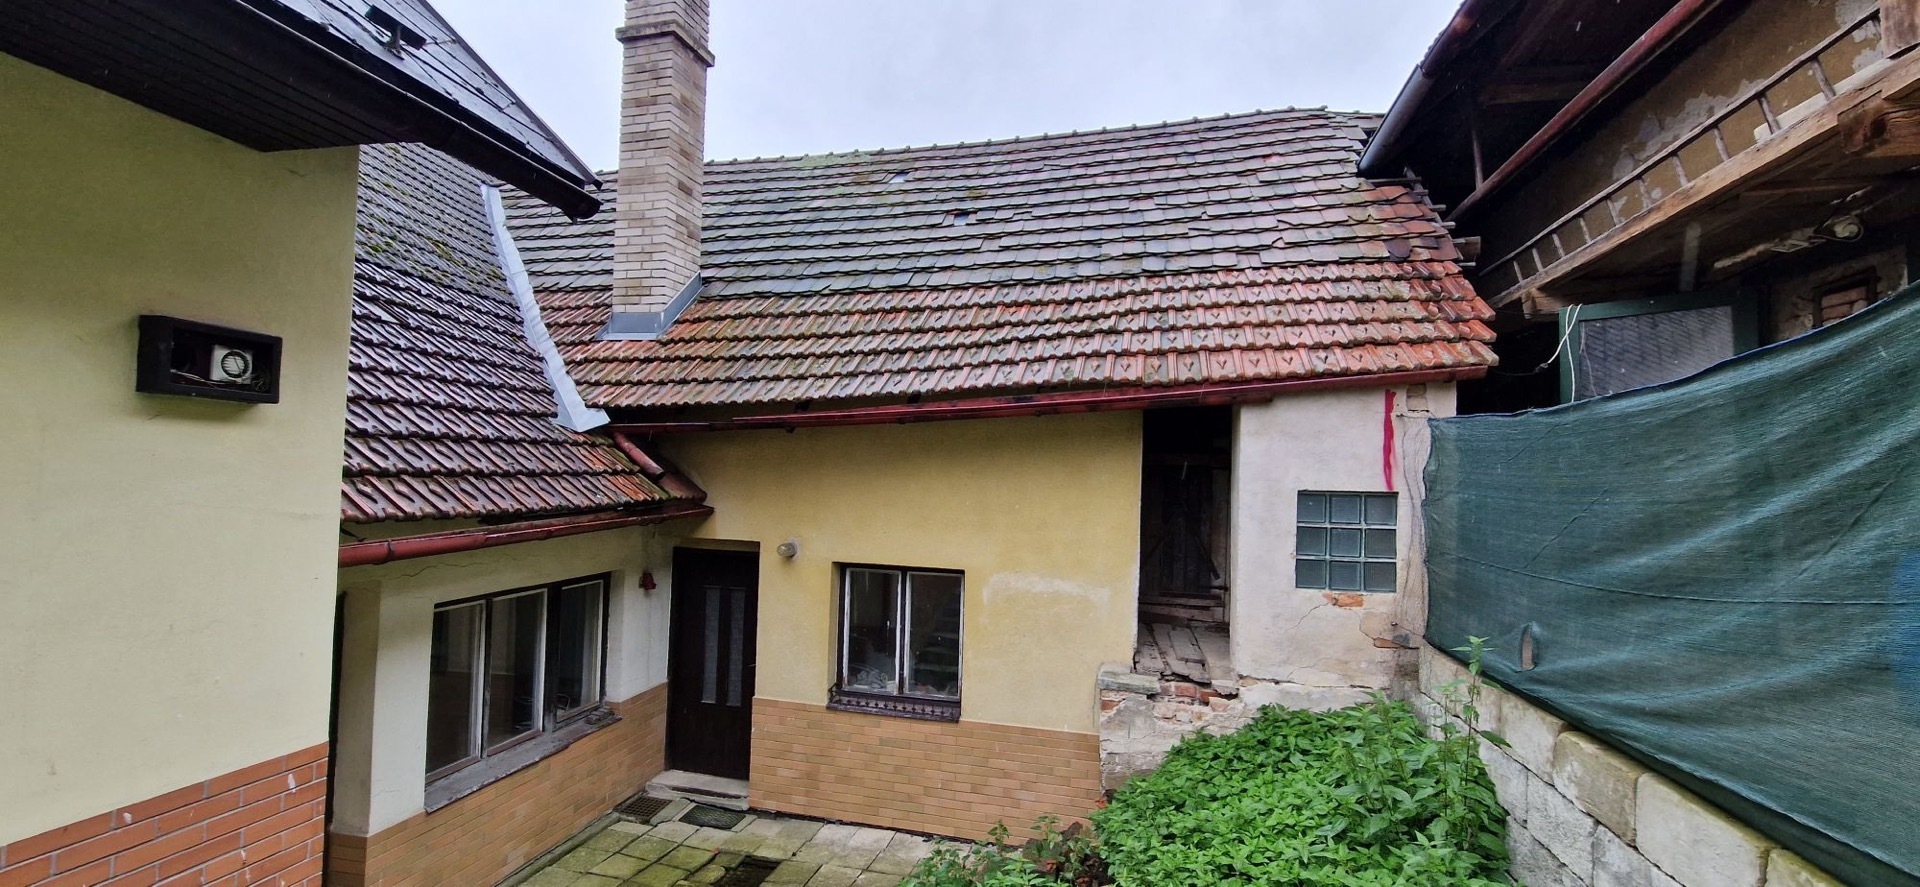 Rodinný dům, Zhoř u České Třebové-LV 117, opakovaná dražba